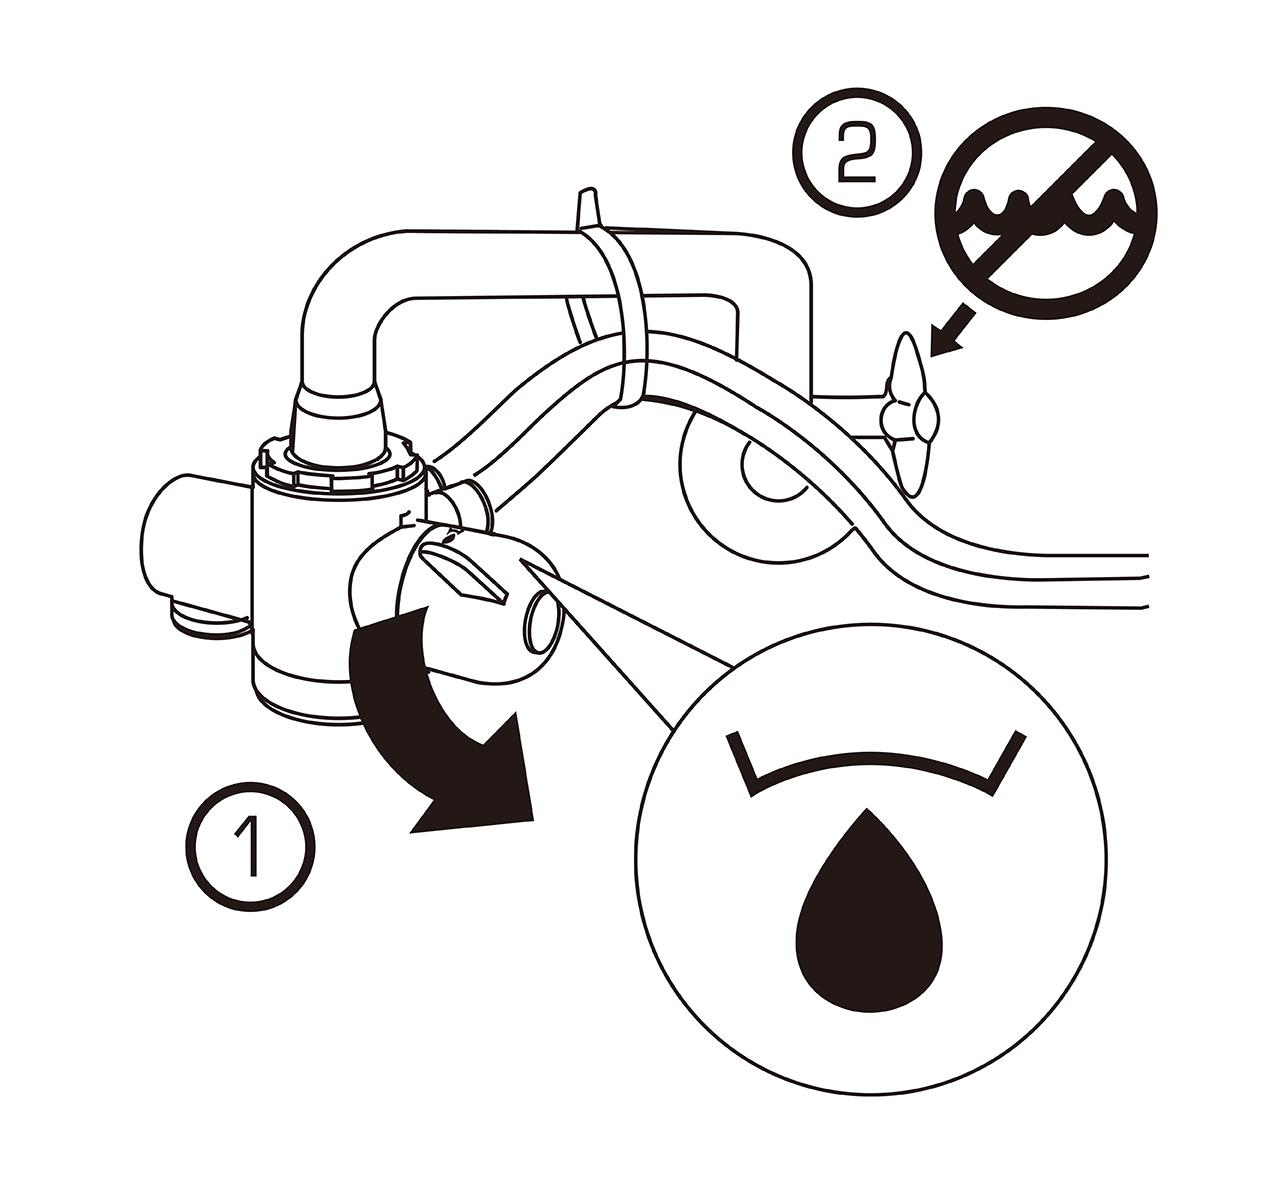 益之源淨水器分流器安裝教學-內螺紋水龍頭 3. 將選擇鈕轉到自來水的位置1️⃣，然後關閉冷水水龍頭2️⃣。